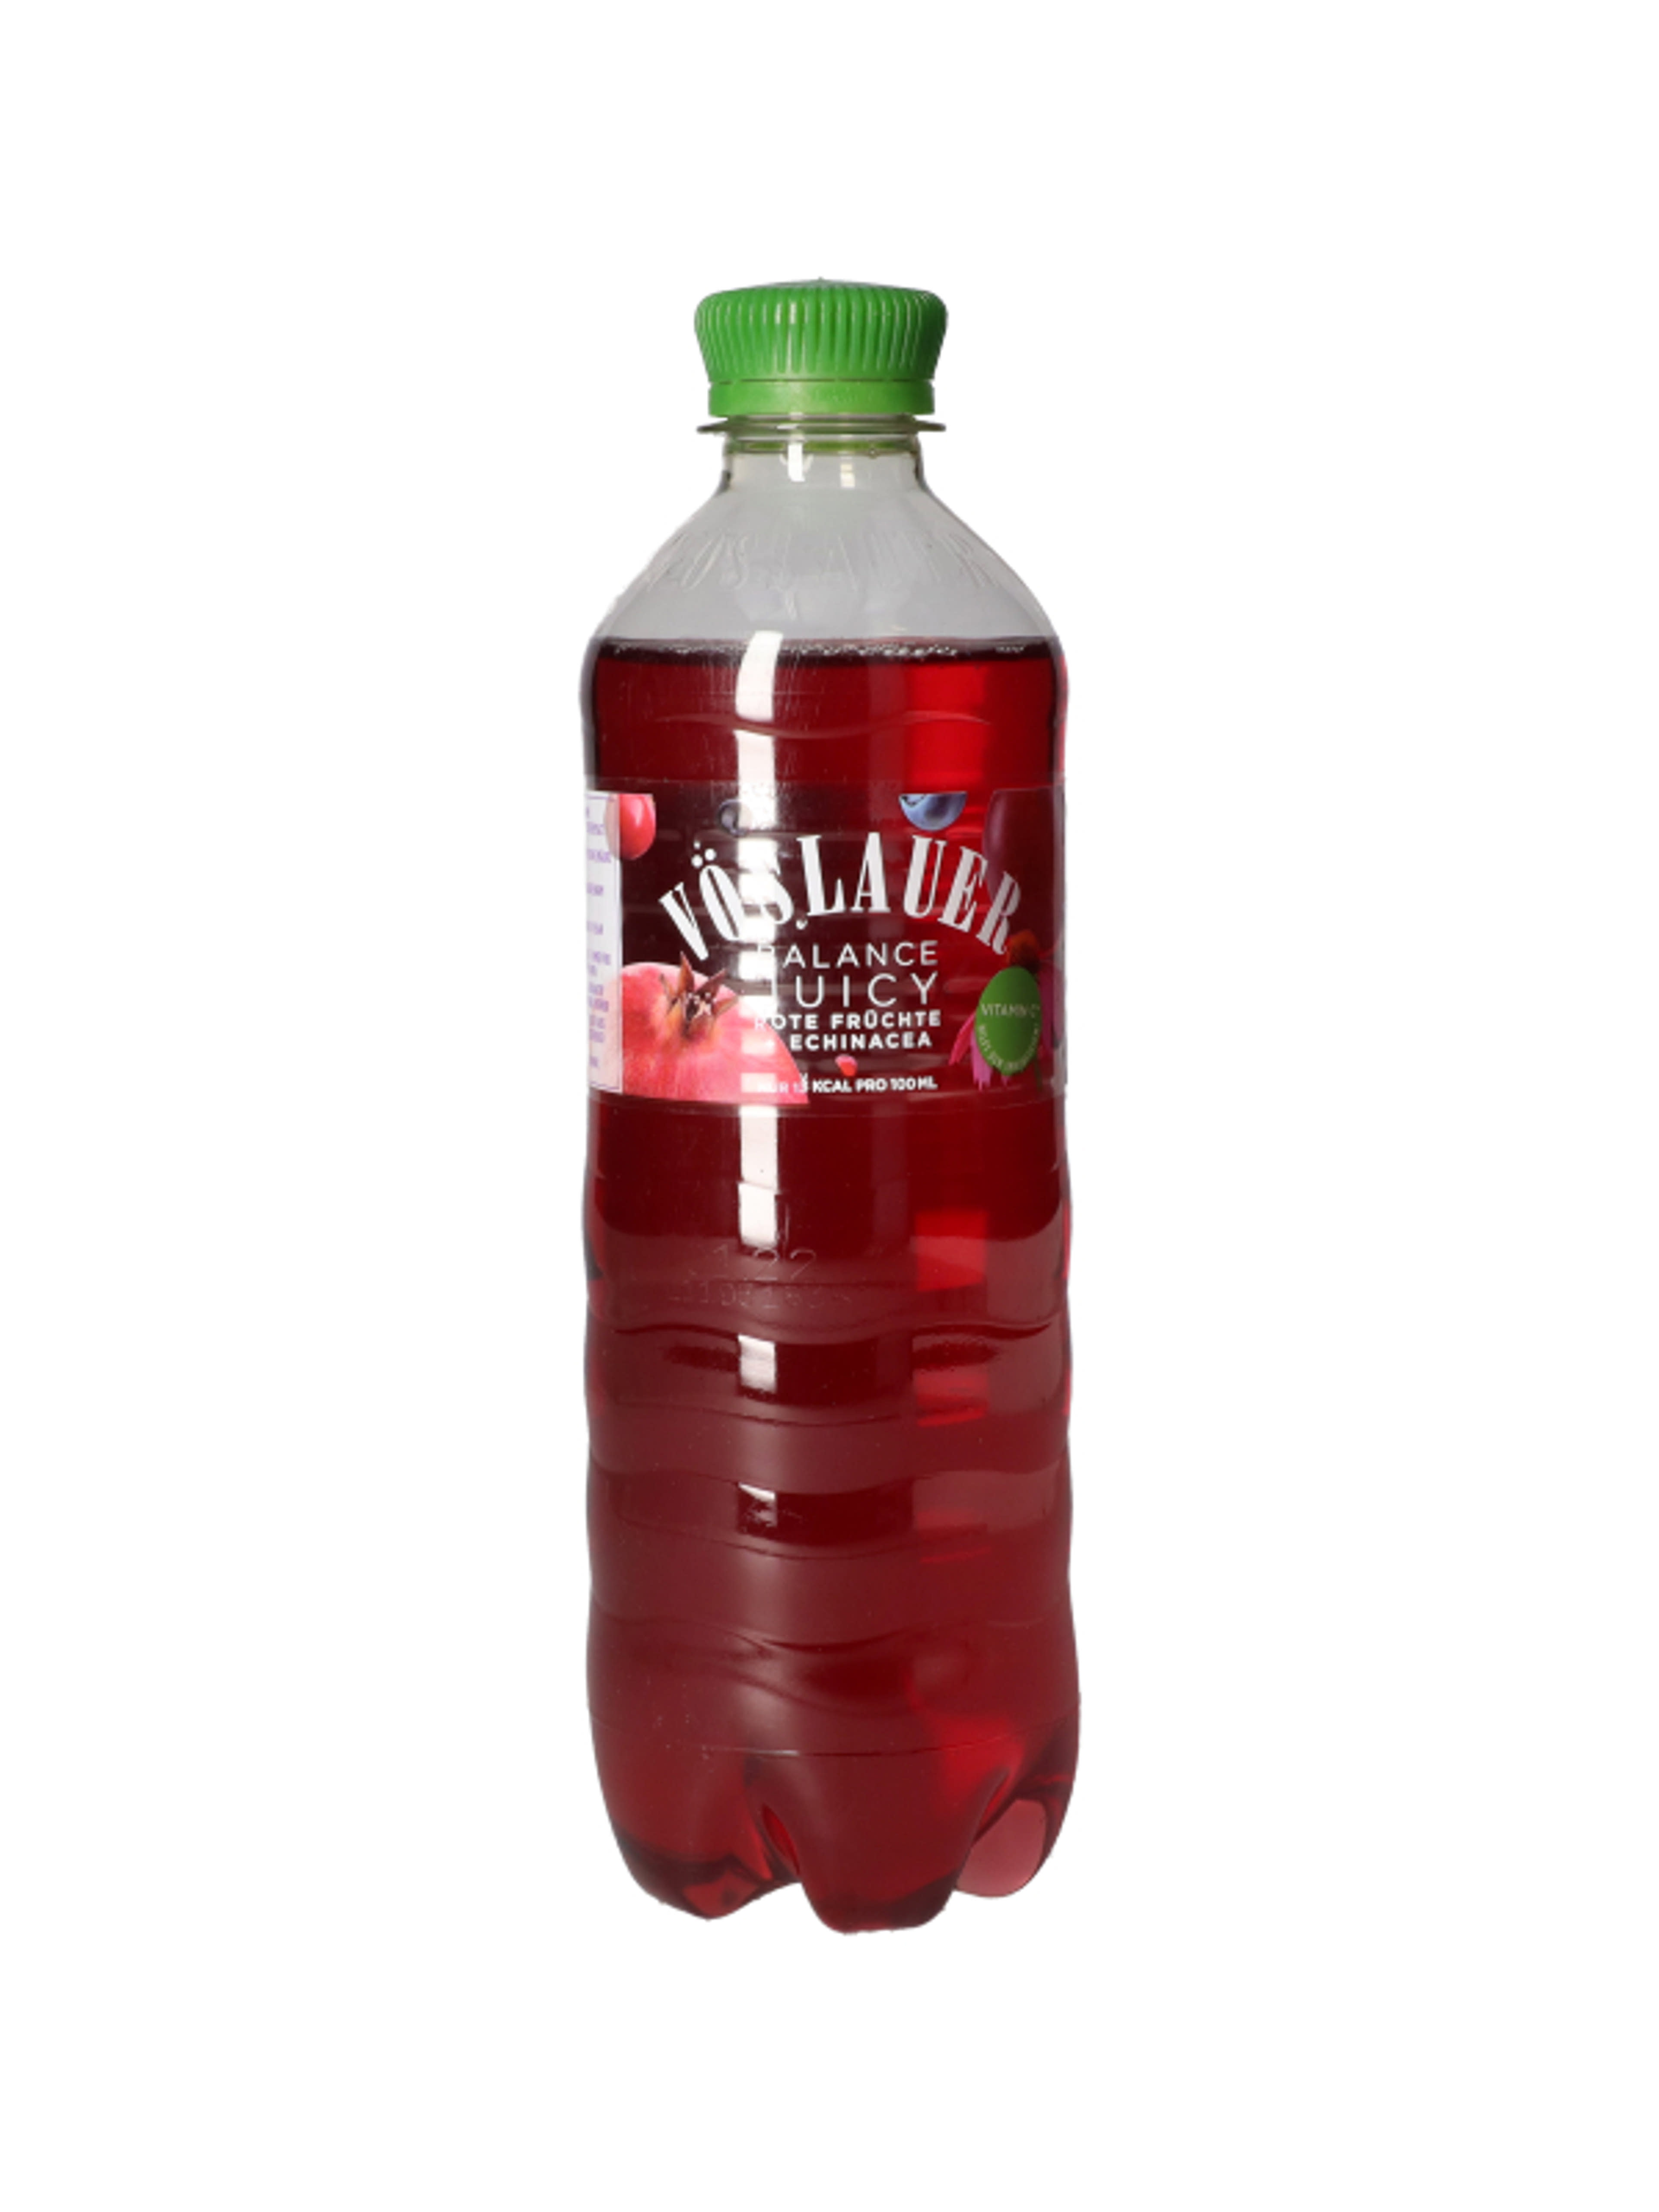 Voslauer juicy piros gyümölcs szénsavas üdítő - 500 ml-1